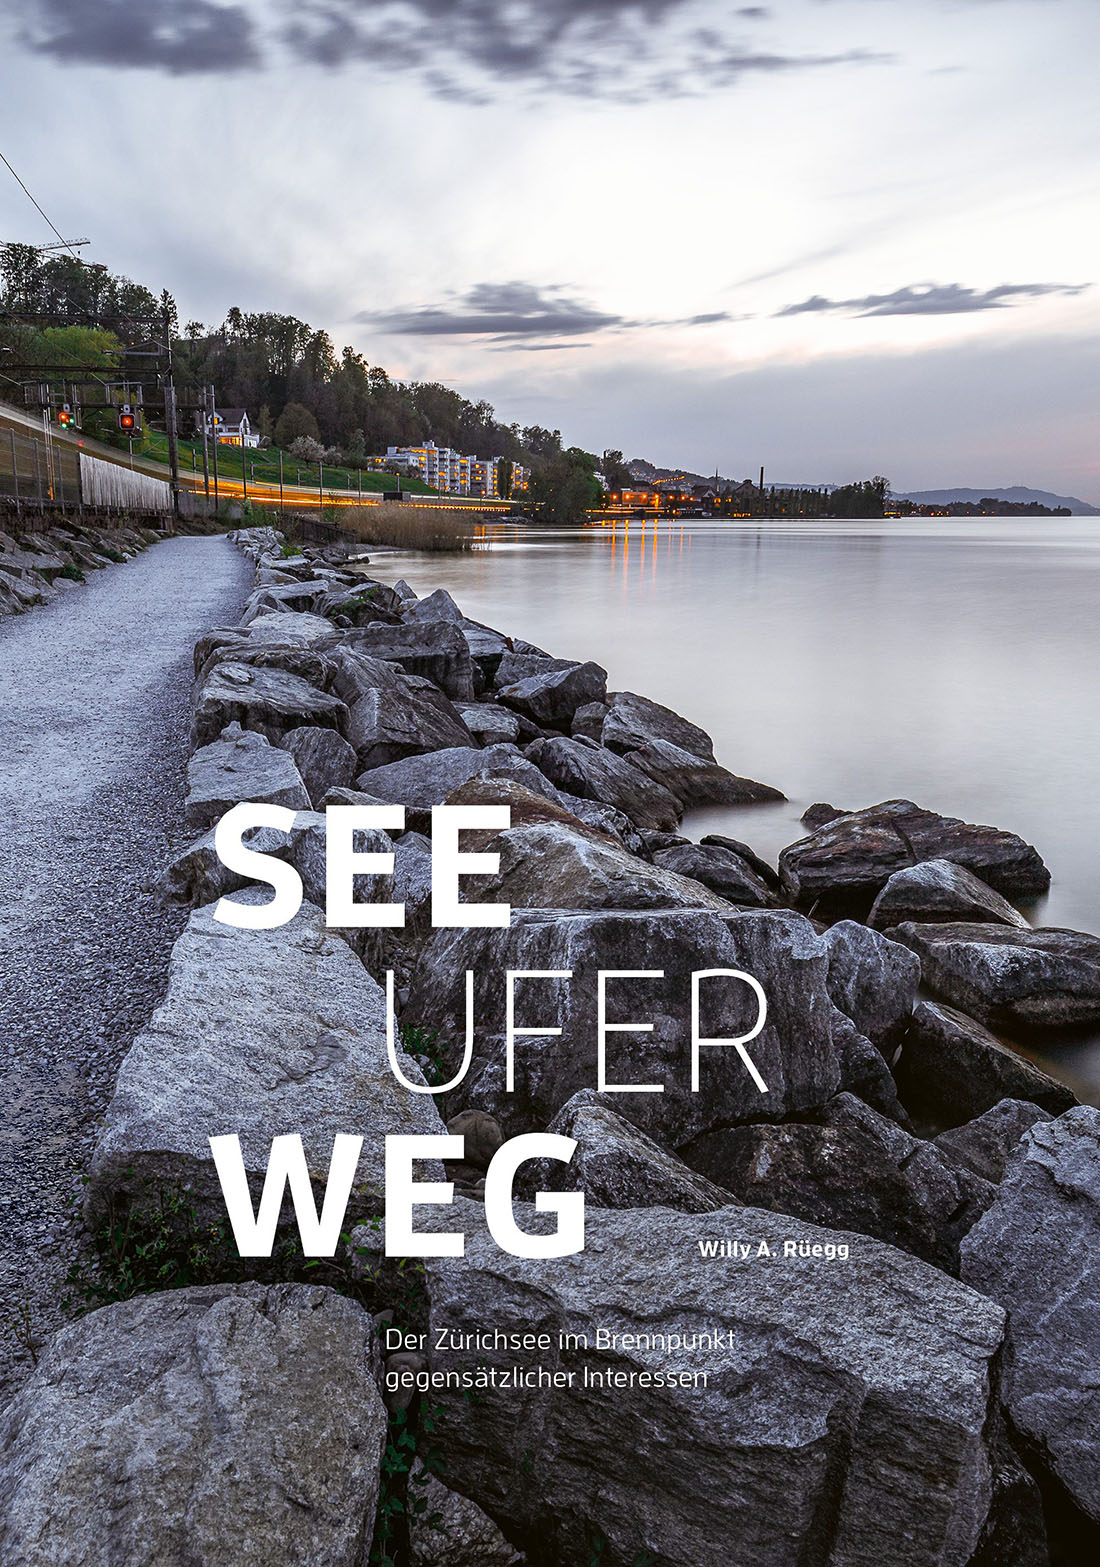 “Seeuferweg – der Zürichsee im Brennpunkt gegensätzlicher Interessen” by Willy A. Rüegg